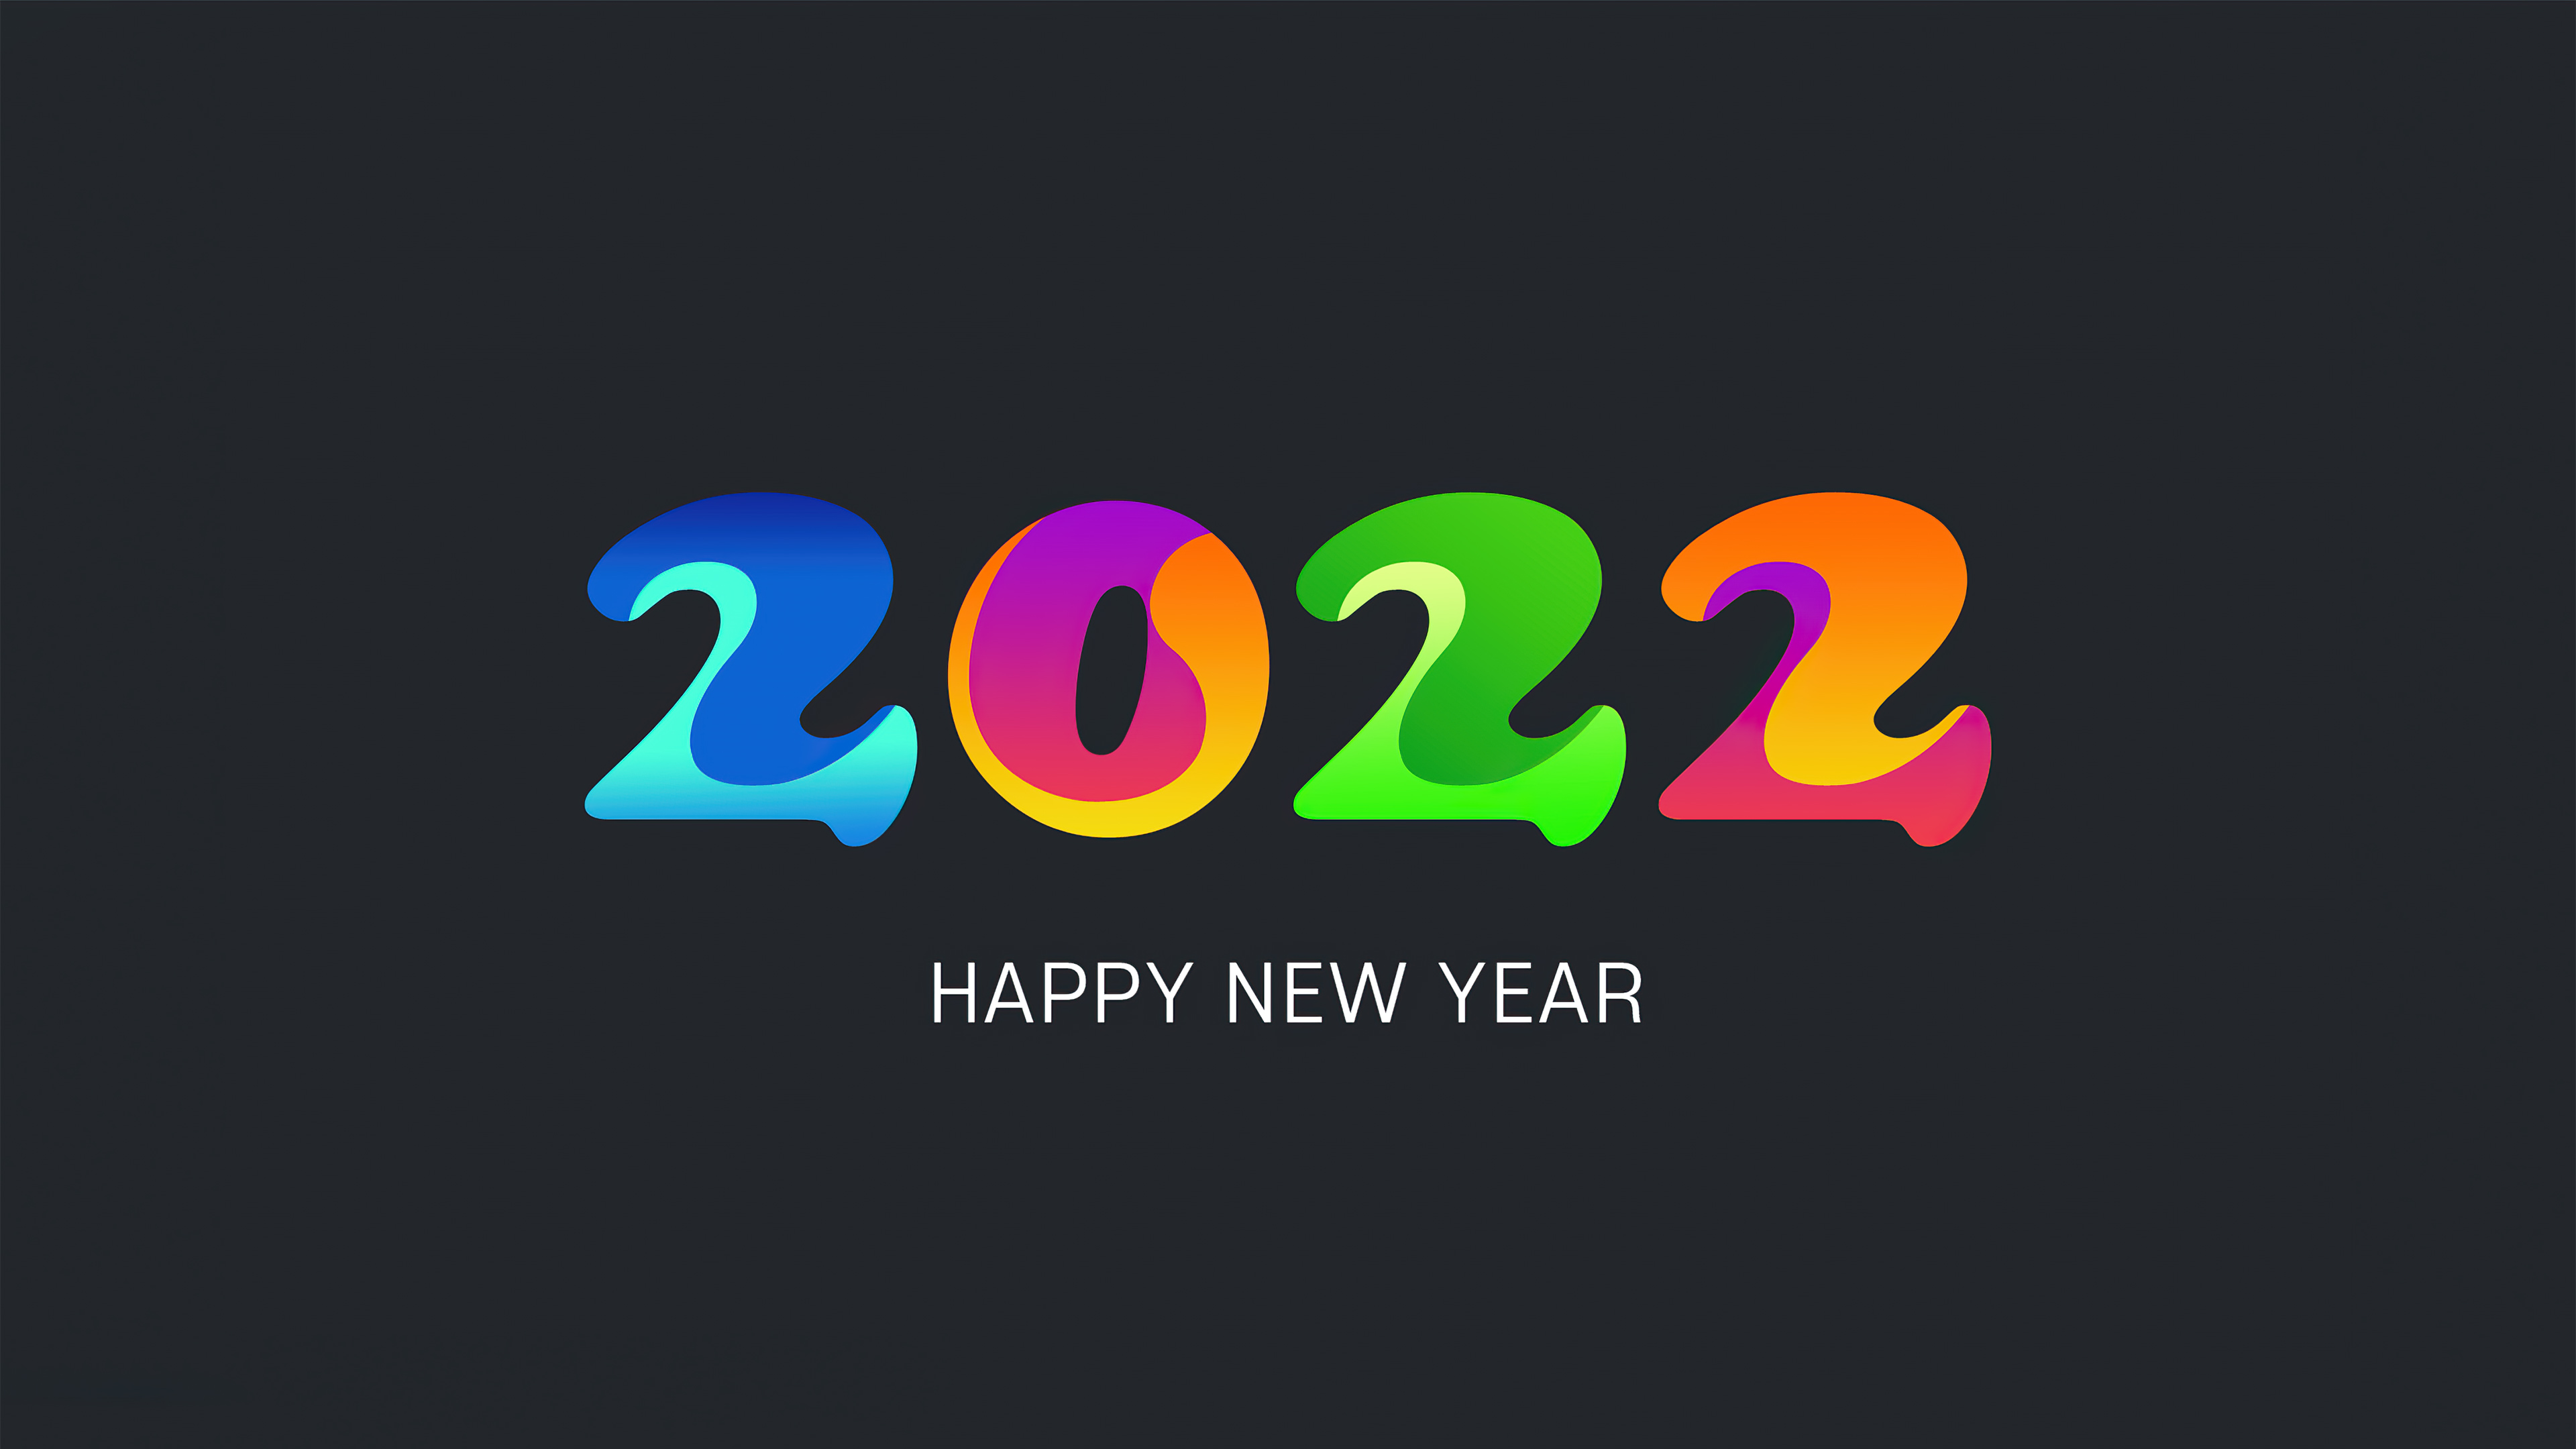 happy new year 2022 4k 1630066860 - Happy New Year 2022 4k - Happy New Year 2022 wallpapers, Happy New Year 2022 4k wallpapers